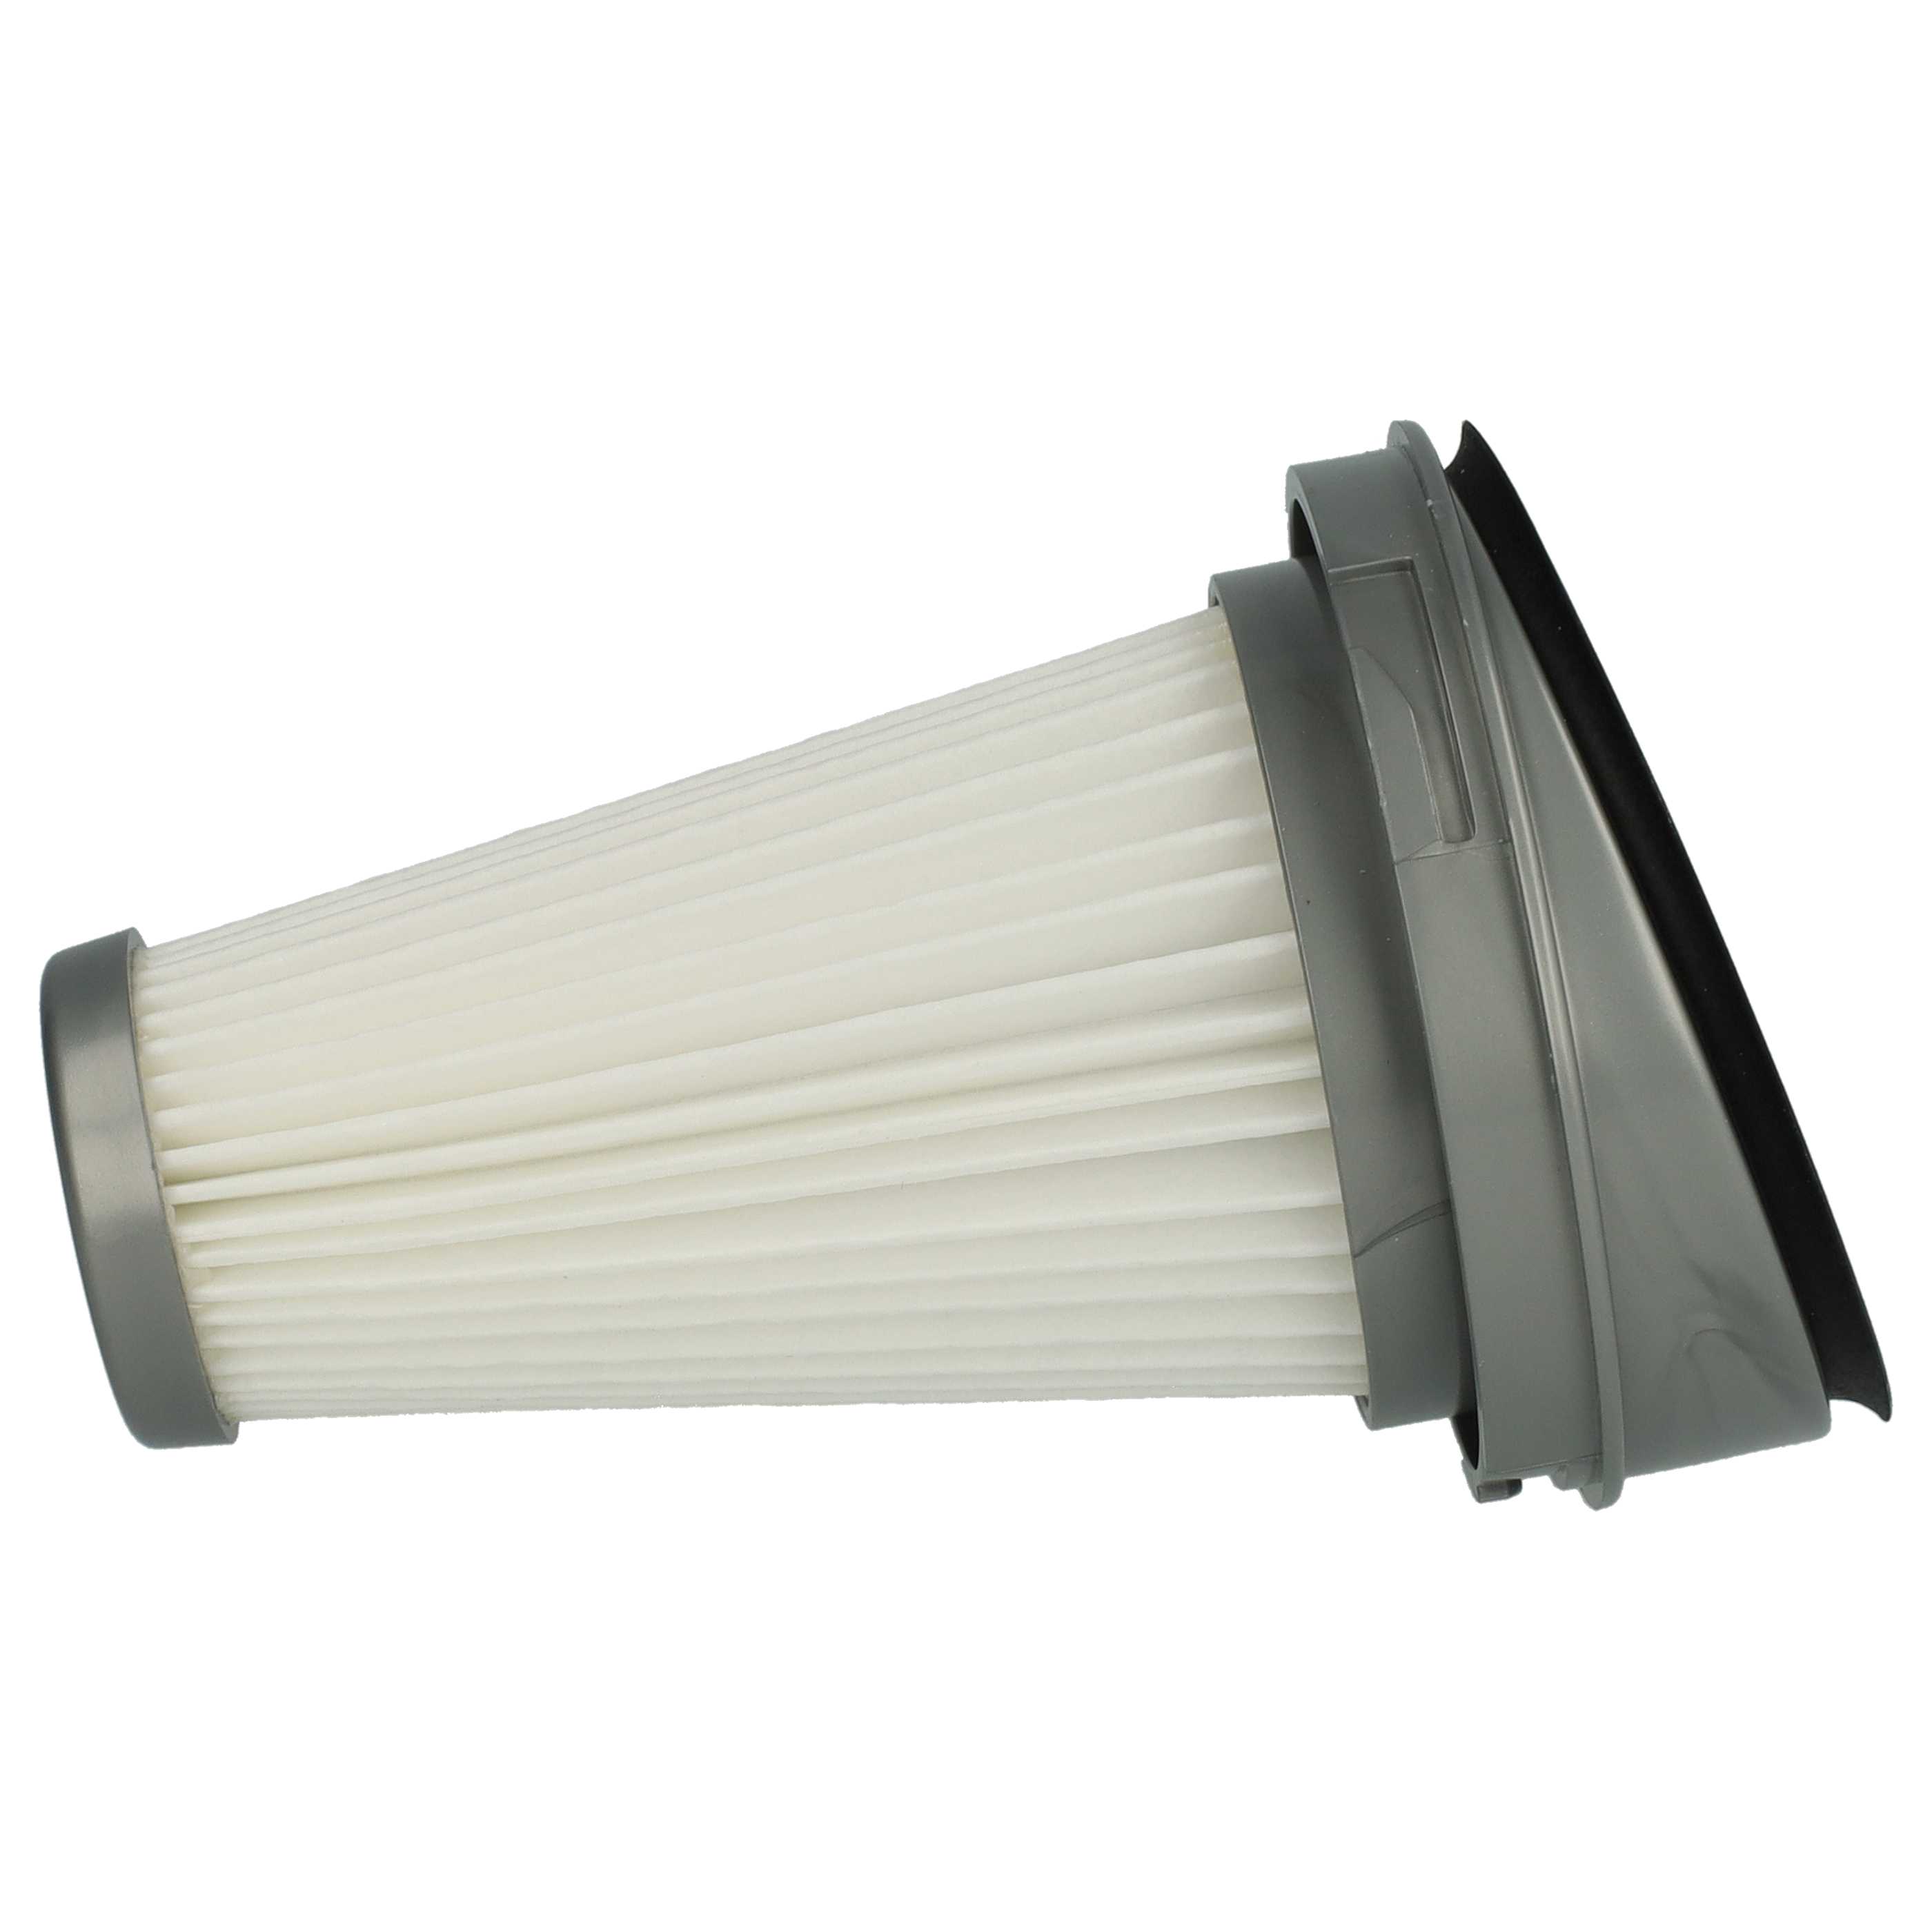 Filtre remplace Black & Decker SVF11, 1004708-73 pour aspirateur - filtre plissé H11